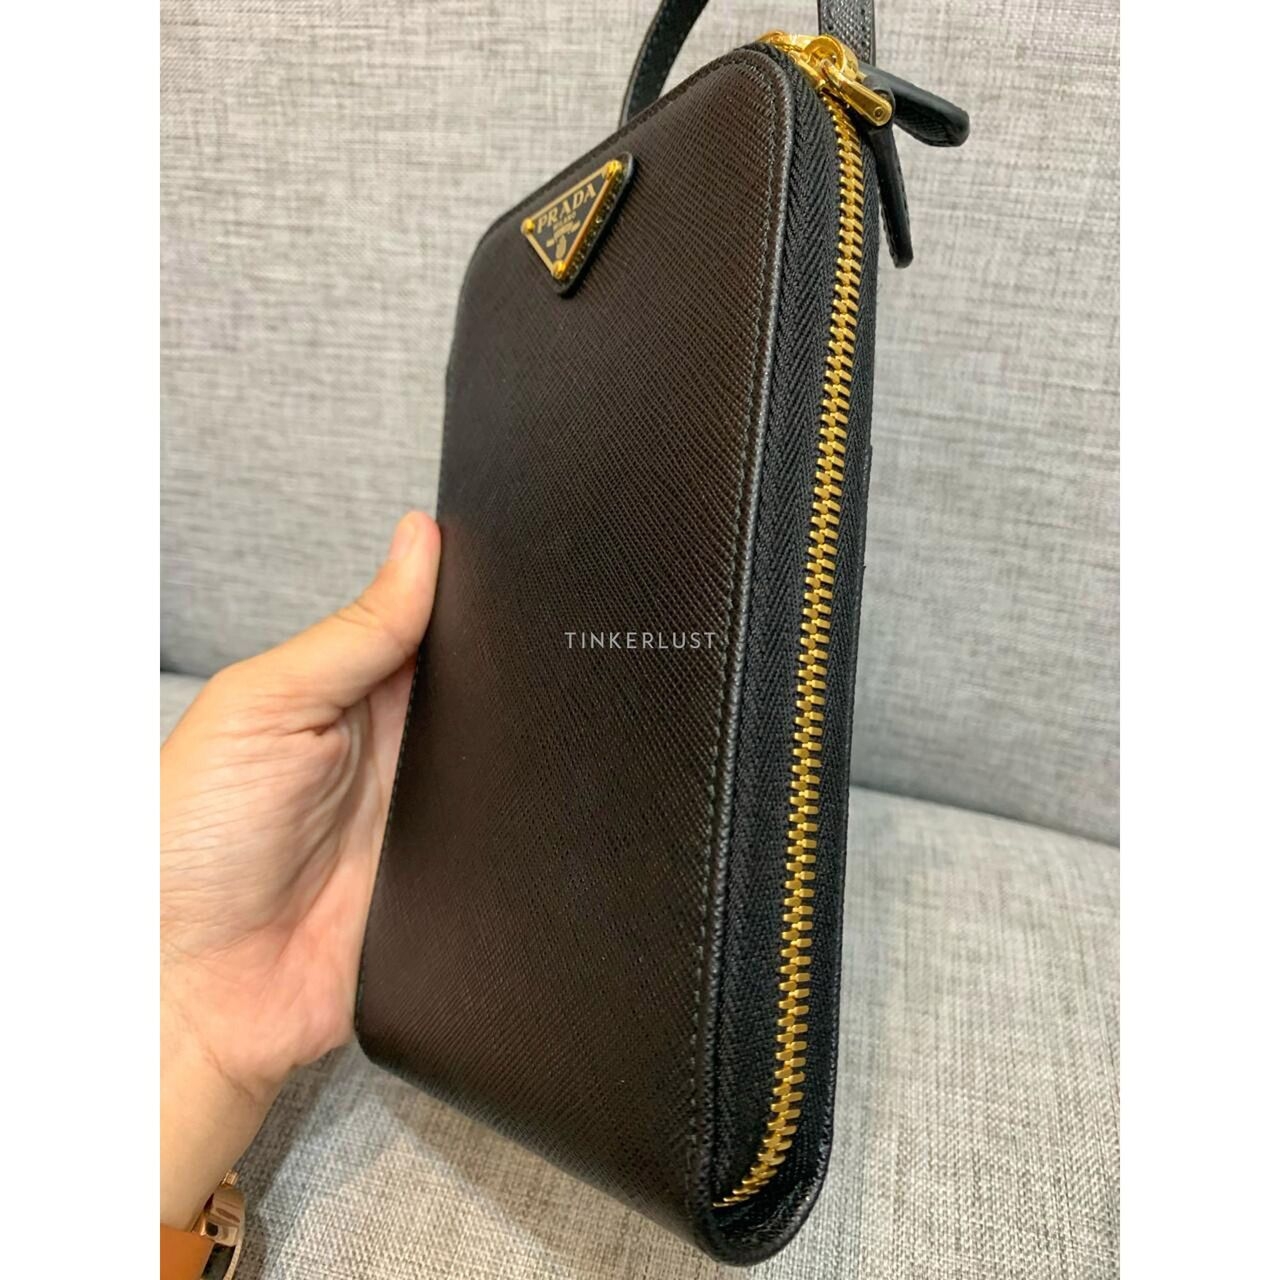 Prada Phone Holder Bag Saffiano Black GHW 2021 Sling Bag